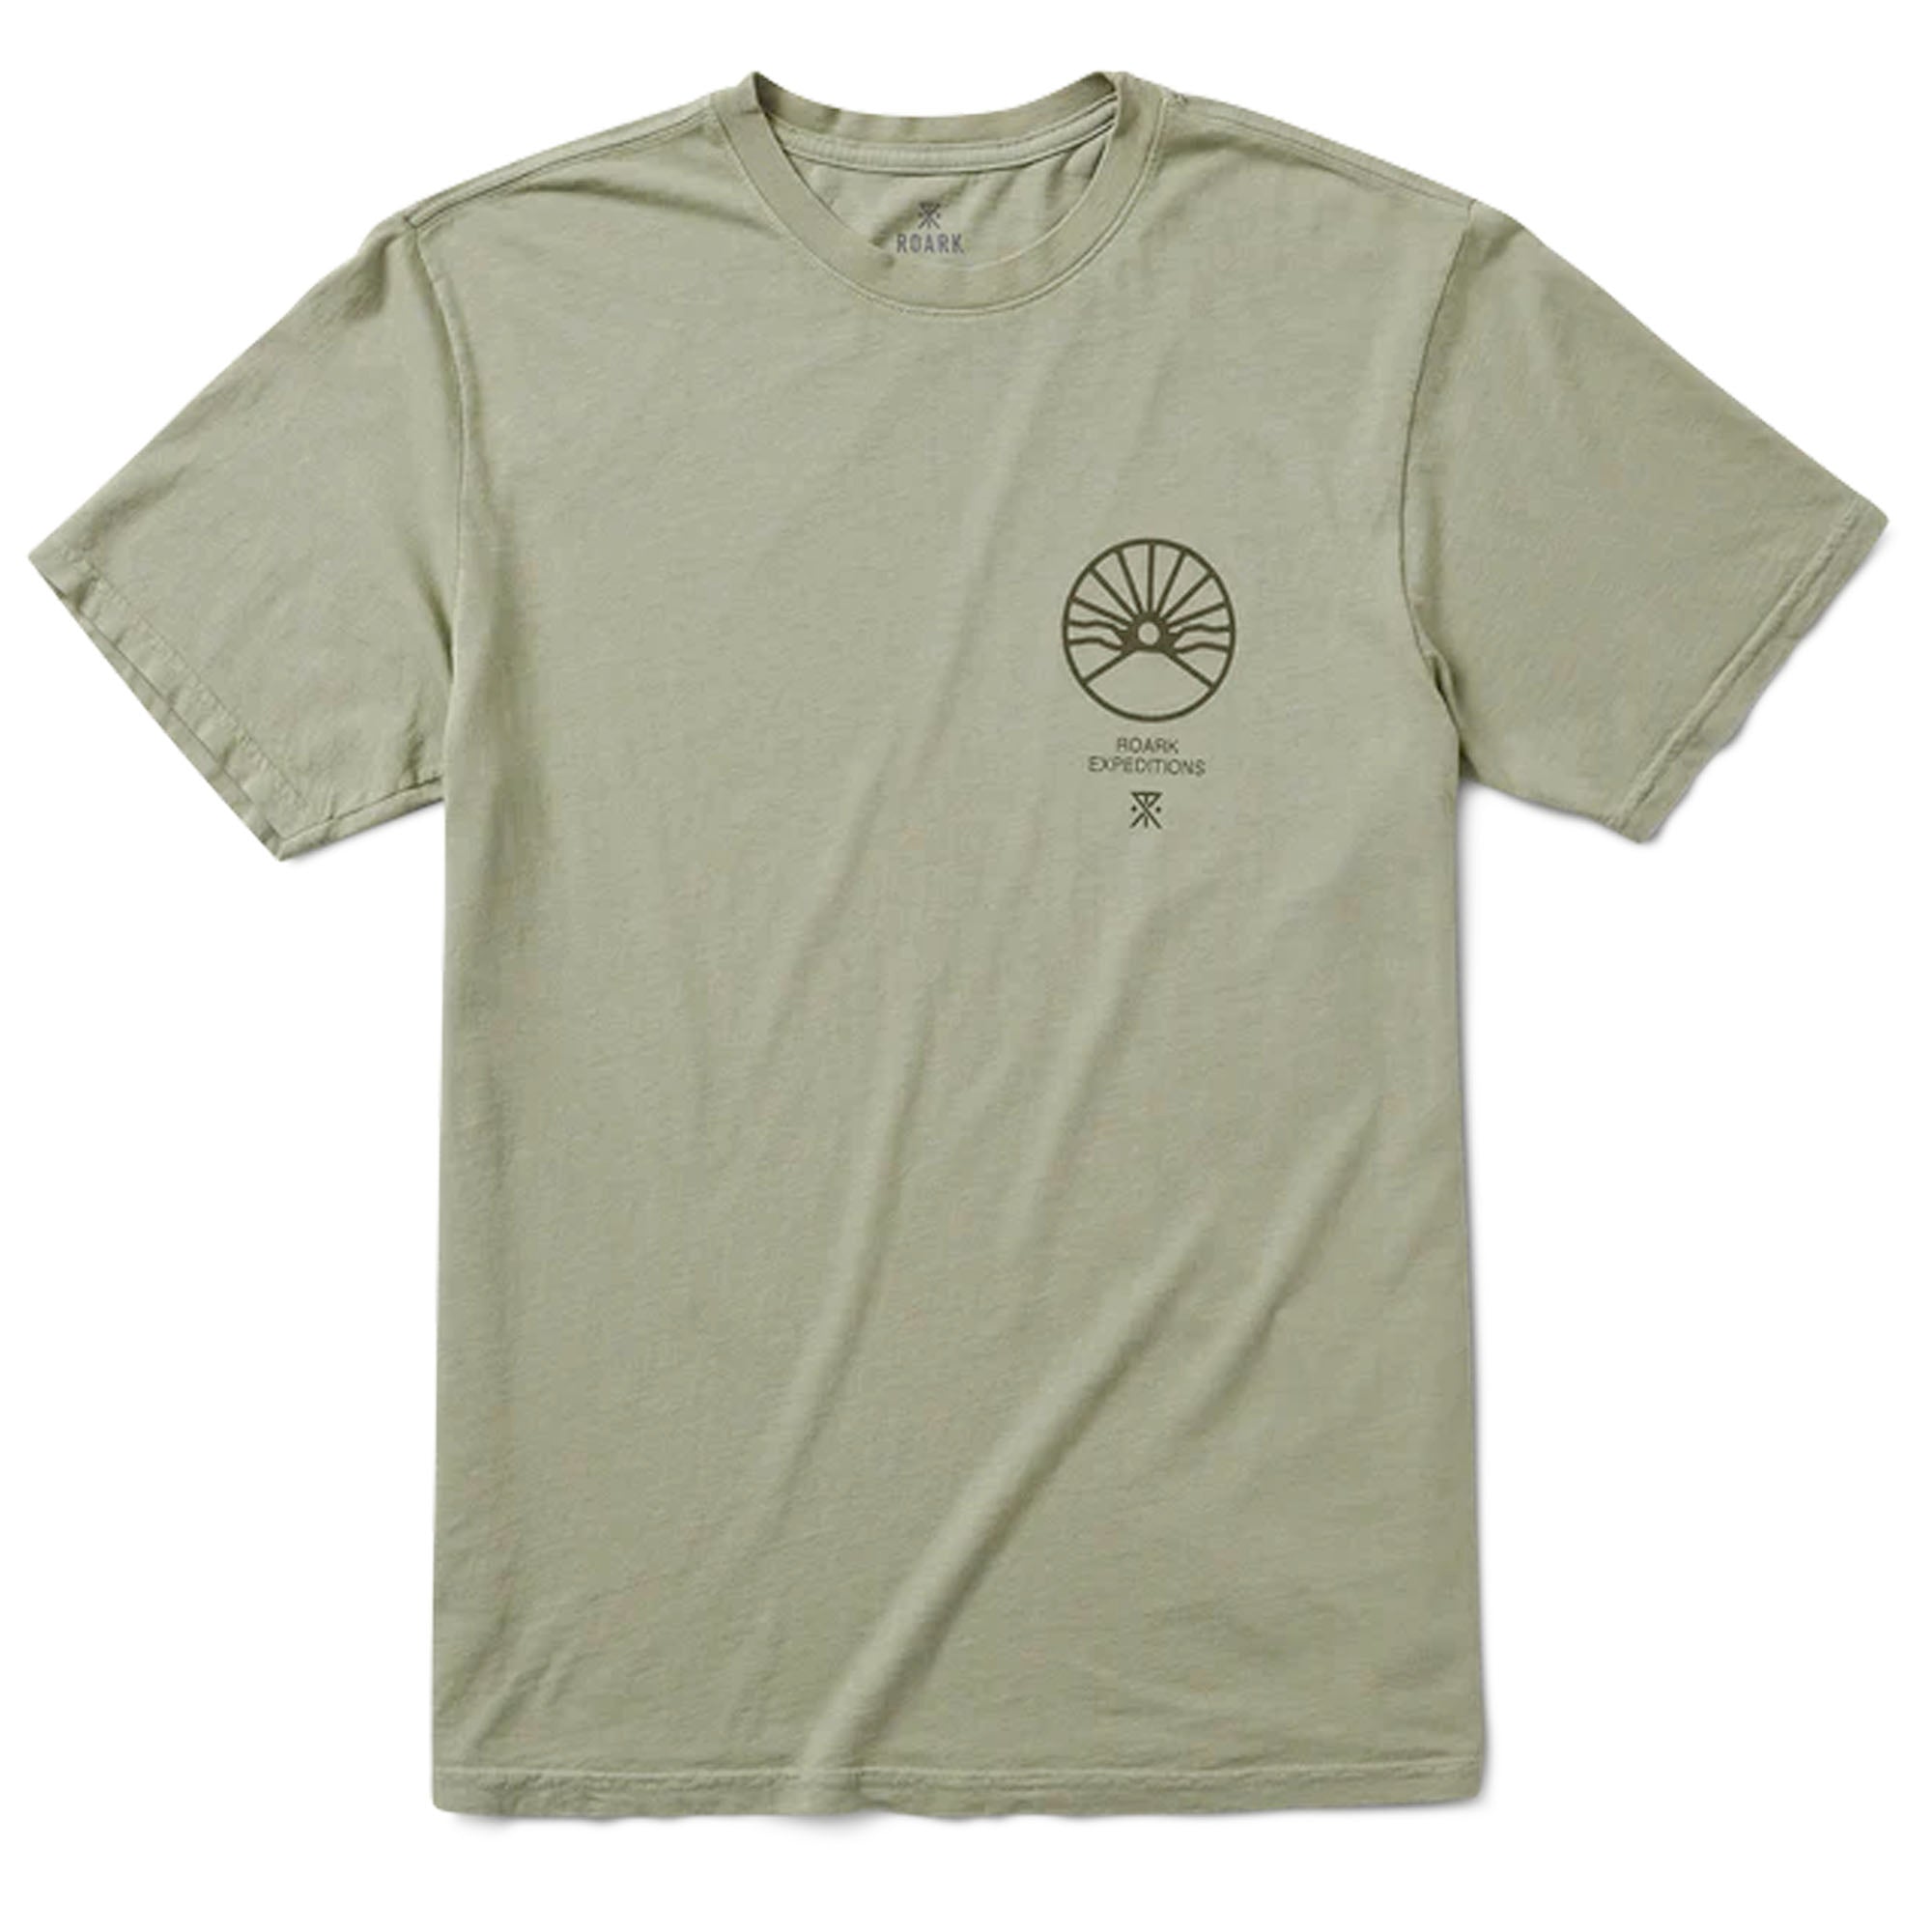 Roark Expeditions Men's S/S T-Shirt